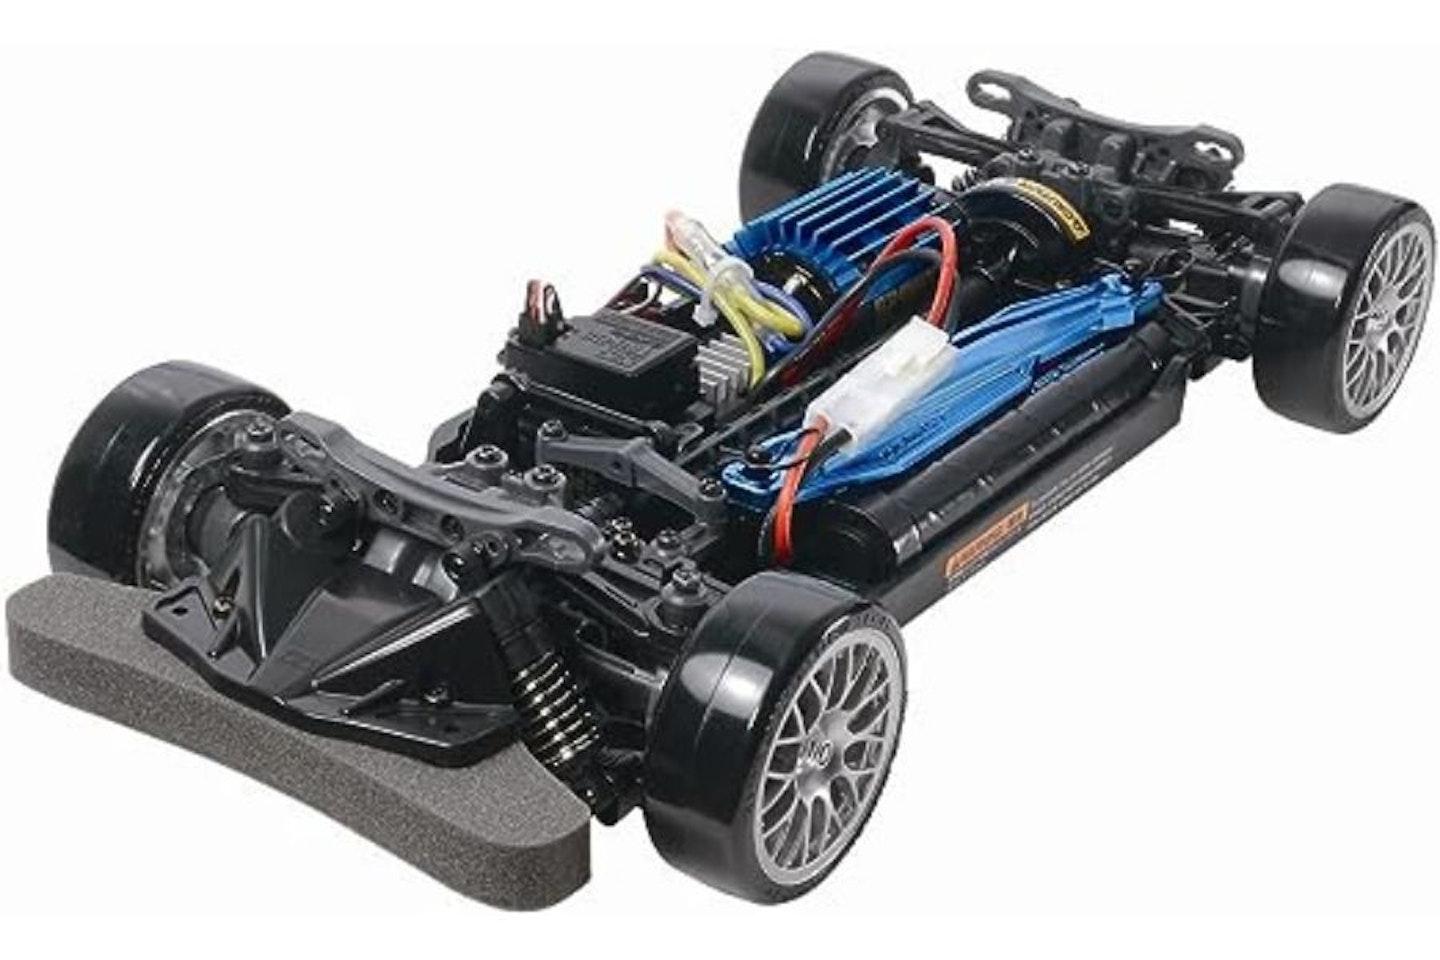 Tamiya drift chassis